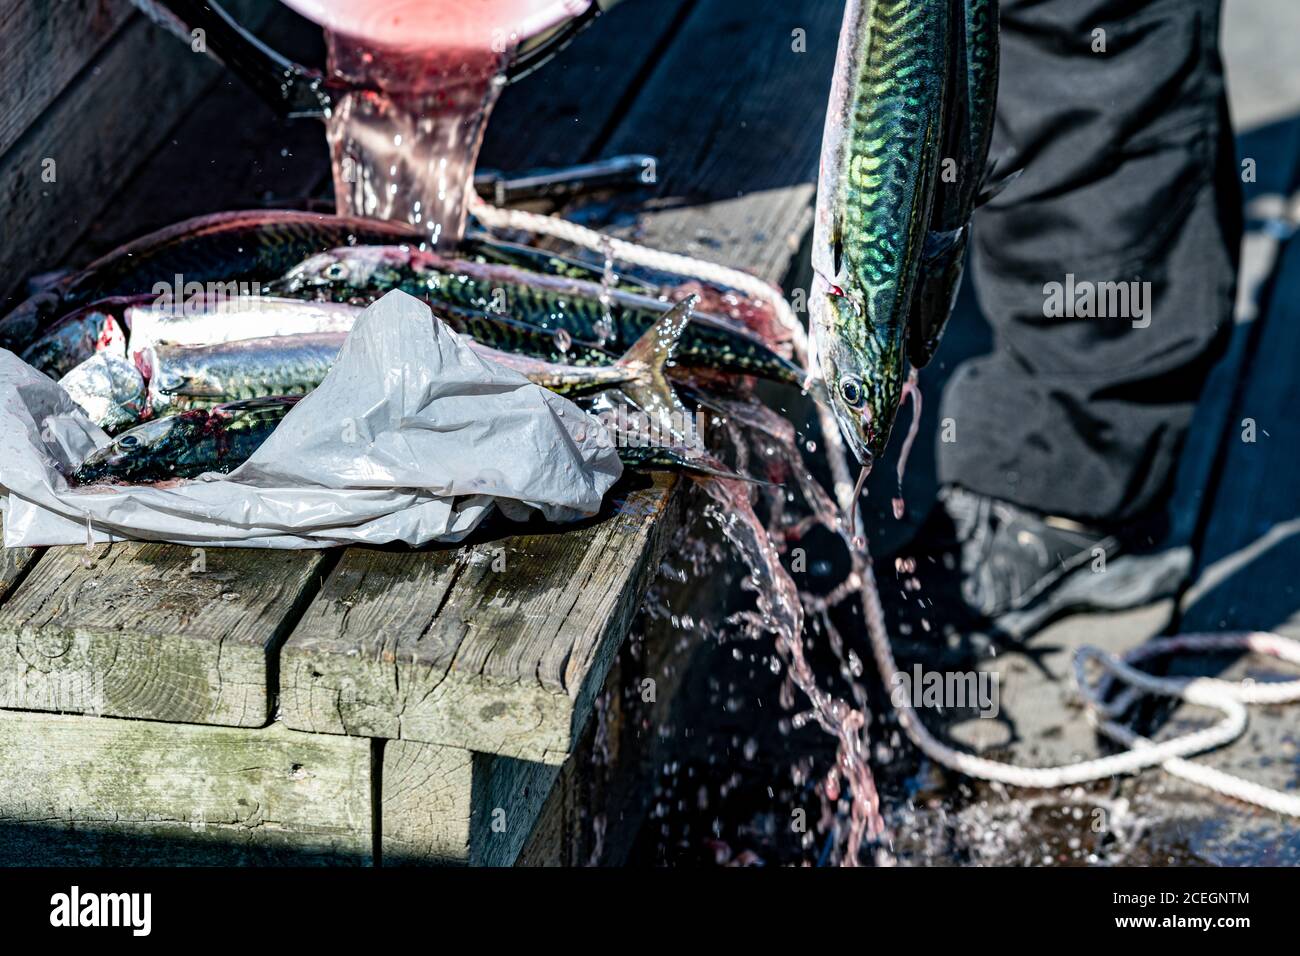 Un pescato fresco di sgombro viene risciacquato e pulito. Immagine di primo piano Foto Stock